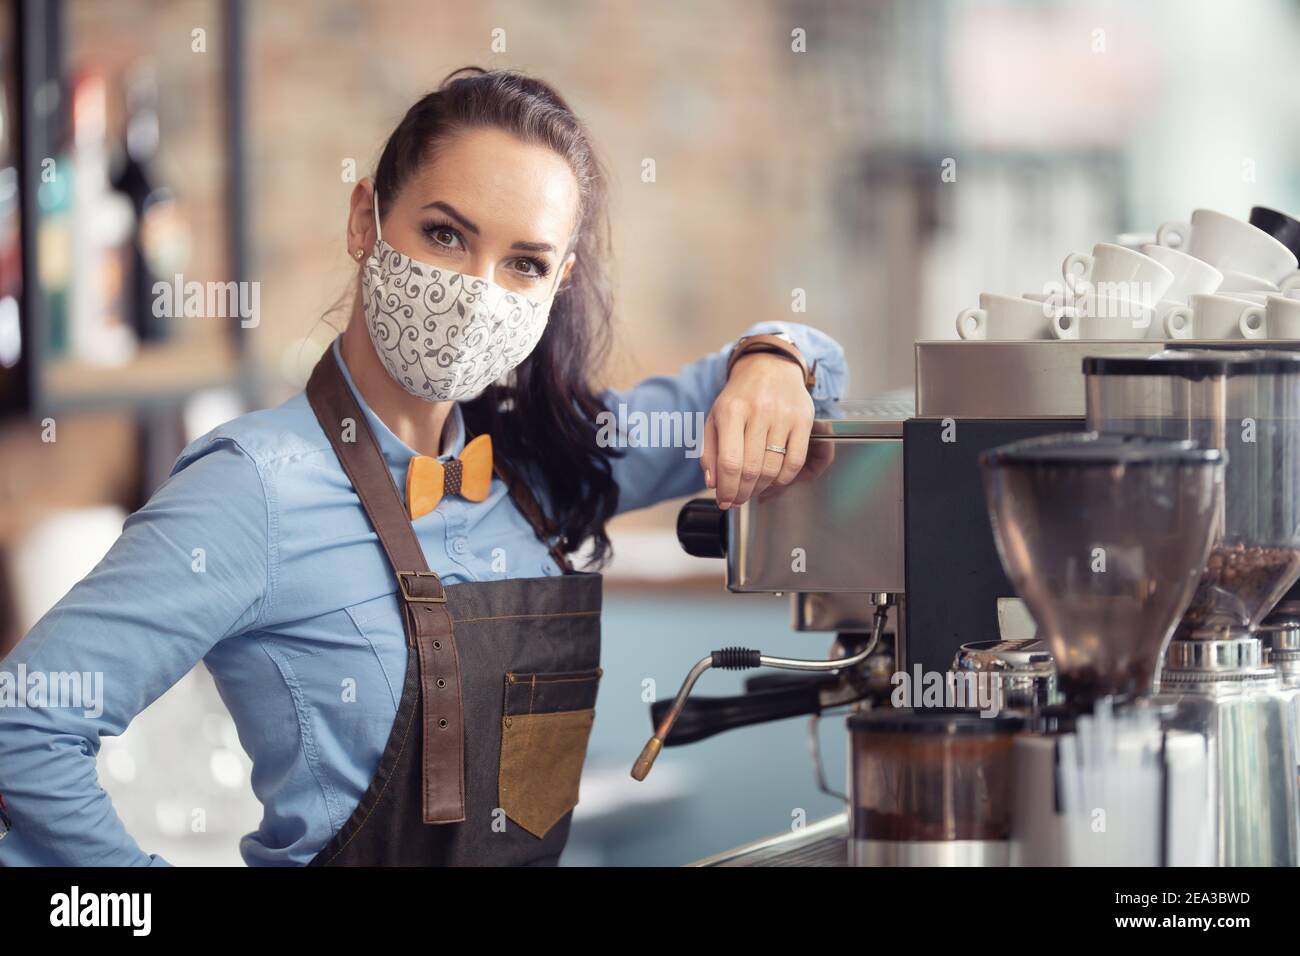 Frau trägt Schutzmaske bei der Arbeit, arbeitet als Kellnerin in einem Kaffeehaus. Stockfoto